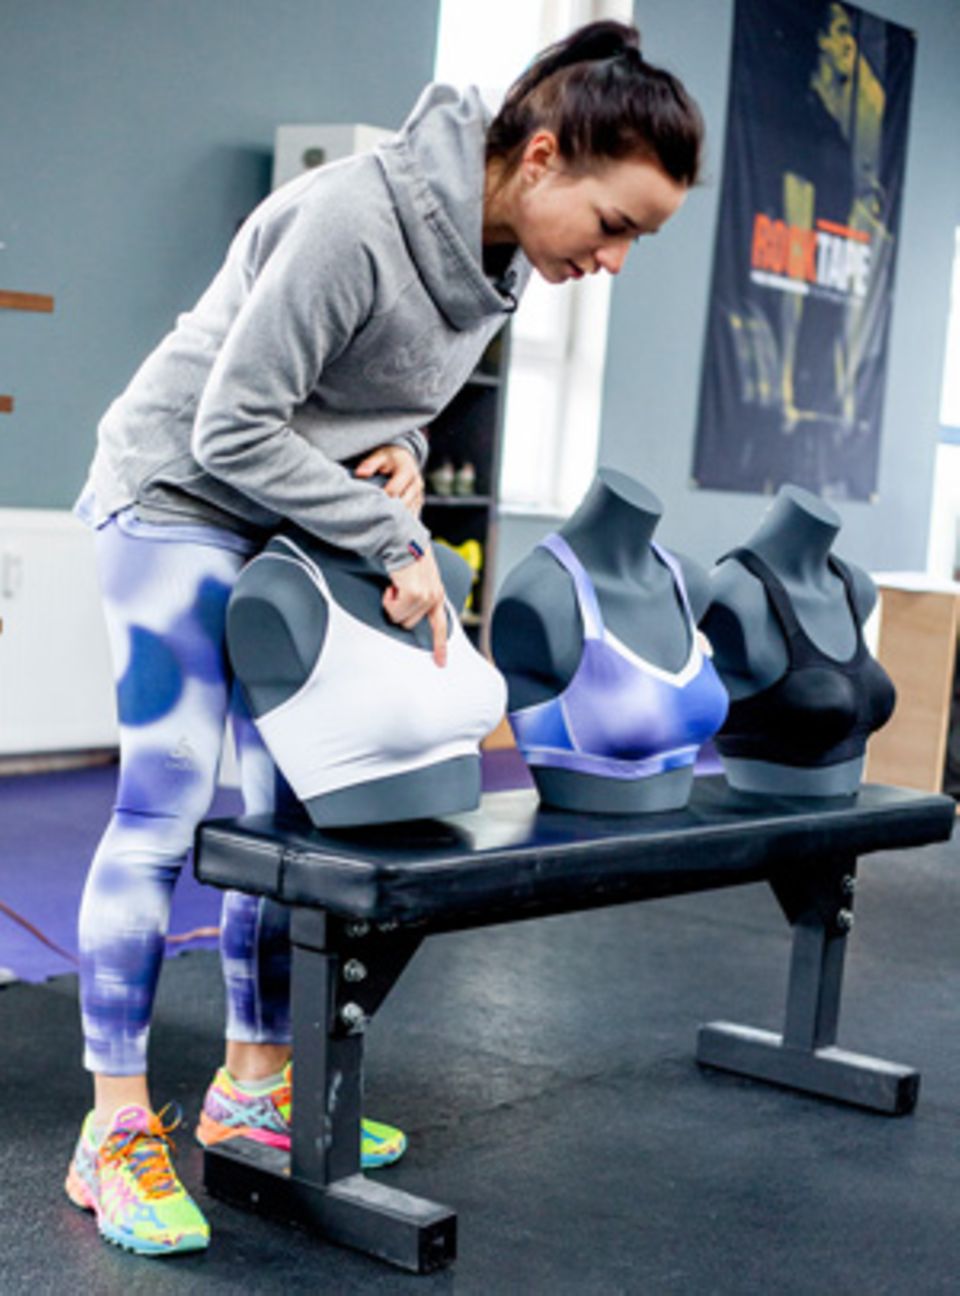 Eva Büsel, Produktmanagerin bei Odlo, hat die neuen Sport-BH-Modelle mitentwickelt. Je nach Brustgröße und Trainingsintensität geben sie unterschiedlich starken Halt.